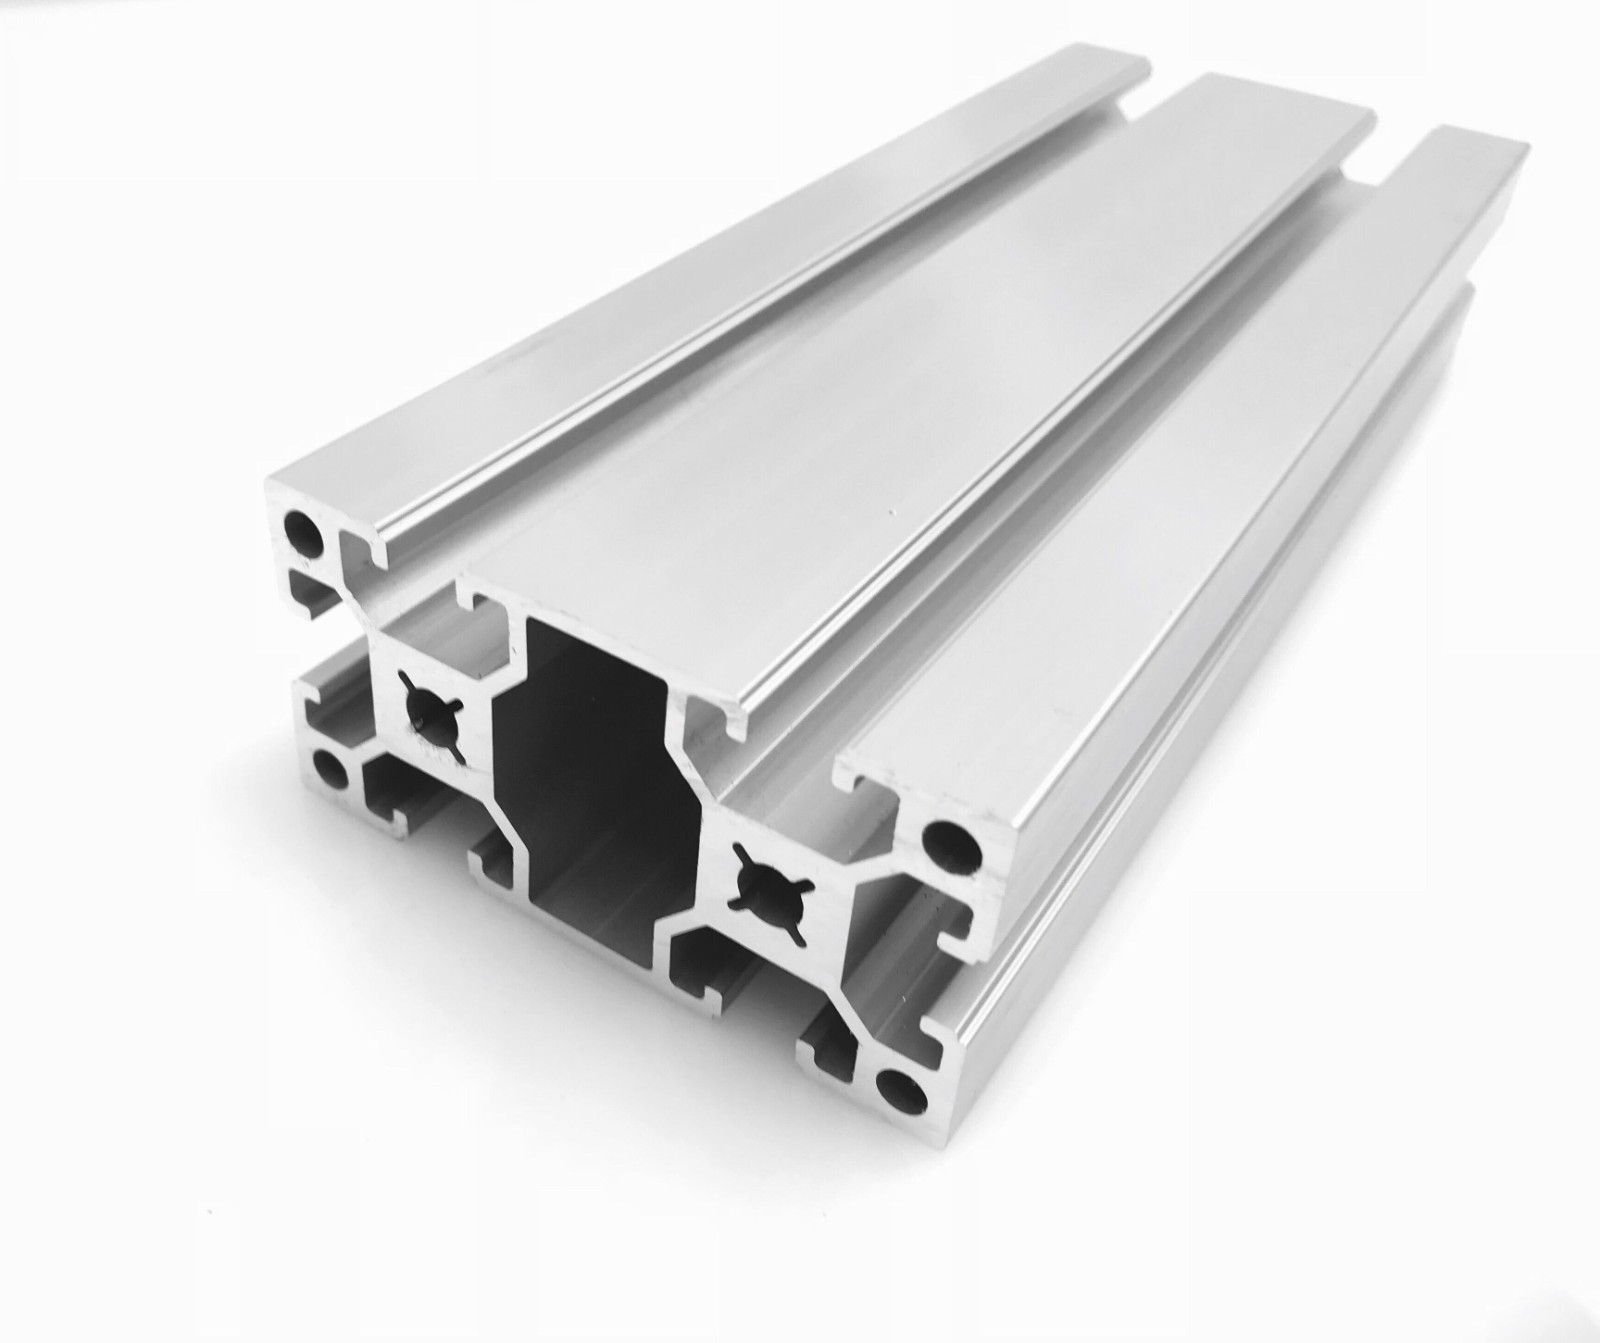 5G基站選用工業鋁材來建造的原因有哪些？